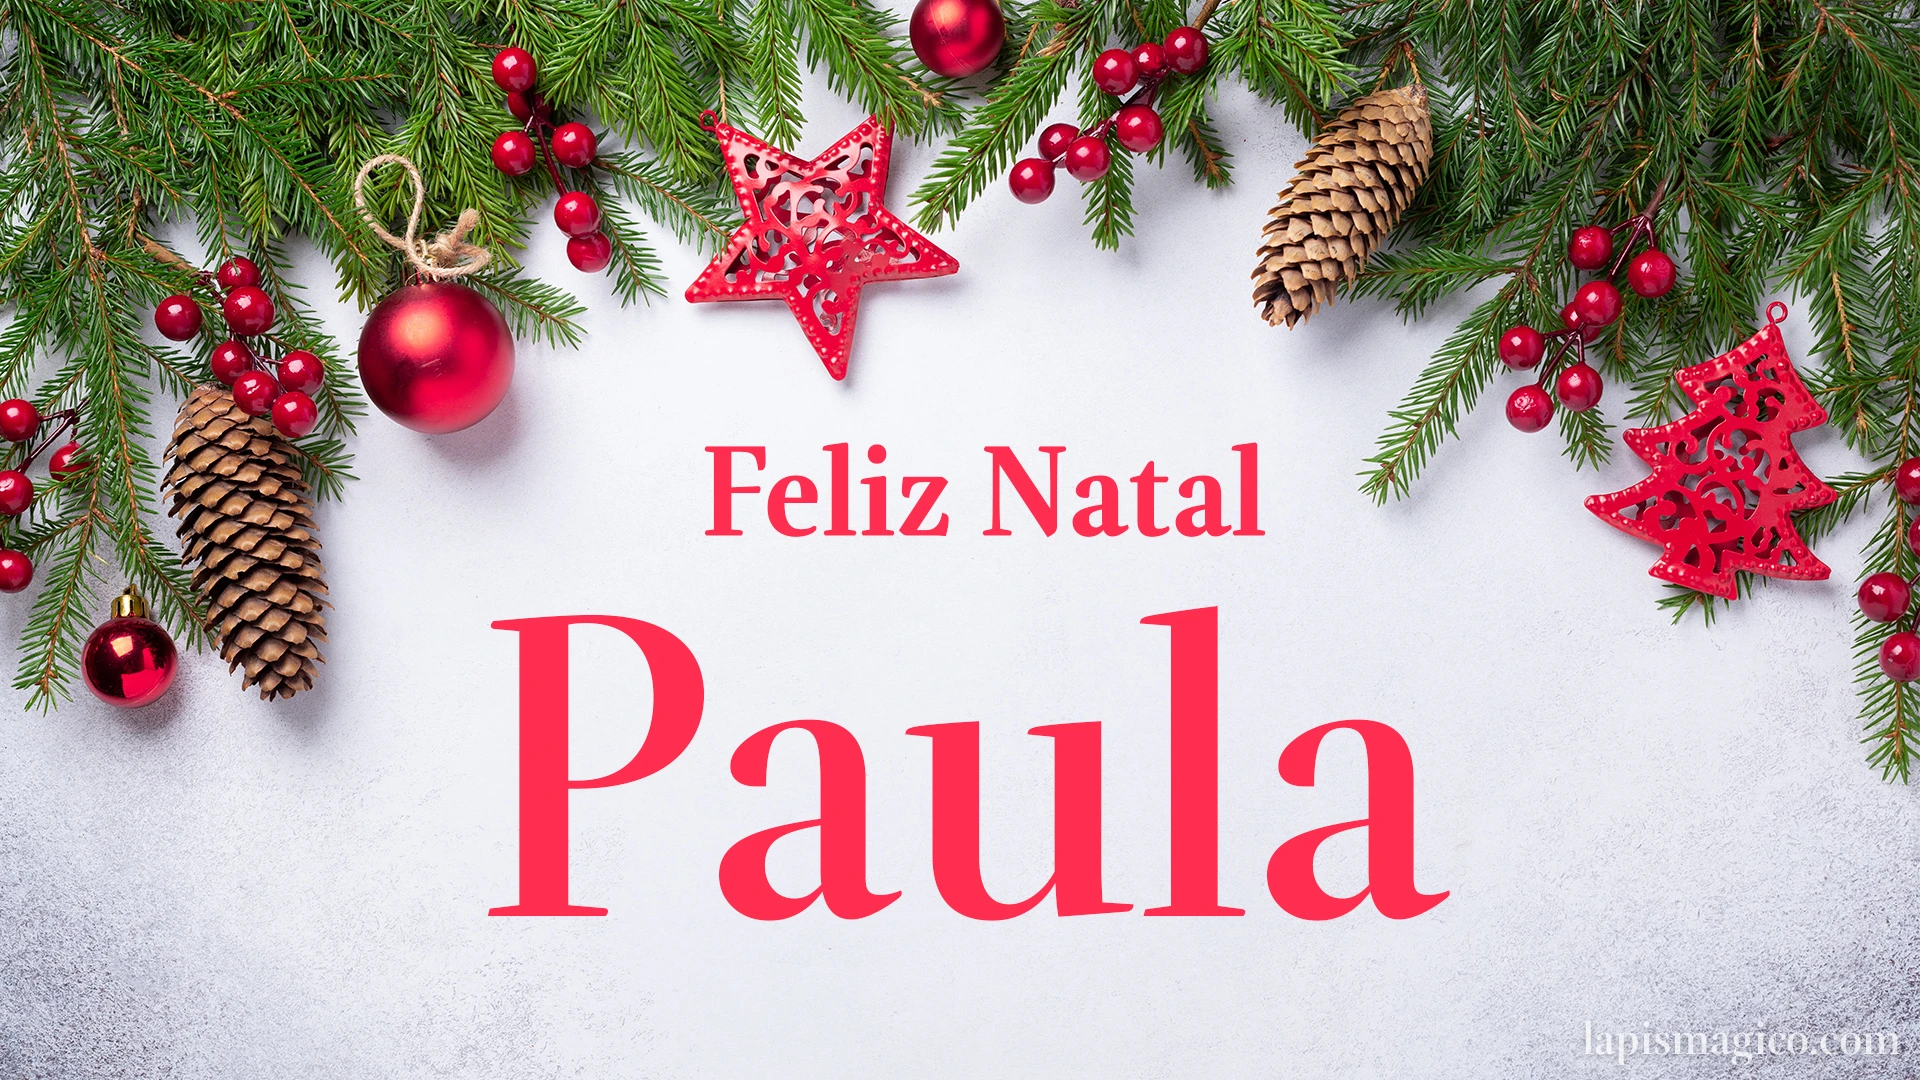 Oh Paula, cinco postais de Feliz Natal Postal com o teu nome